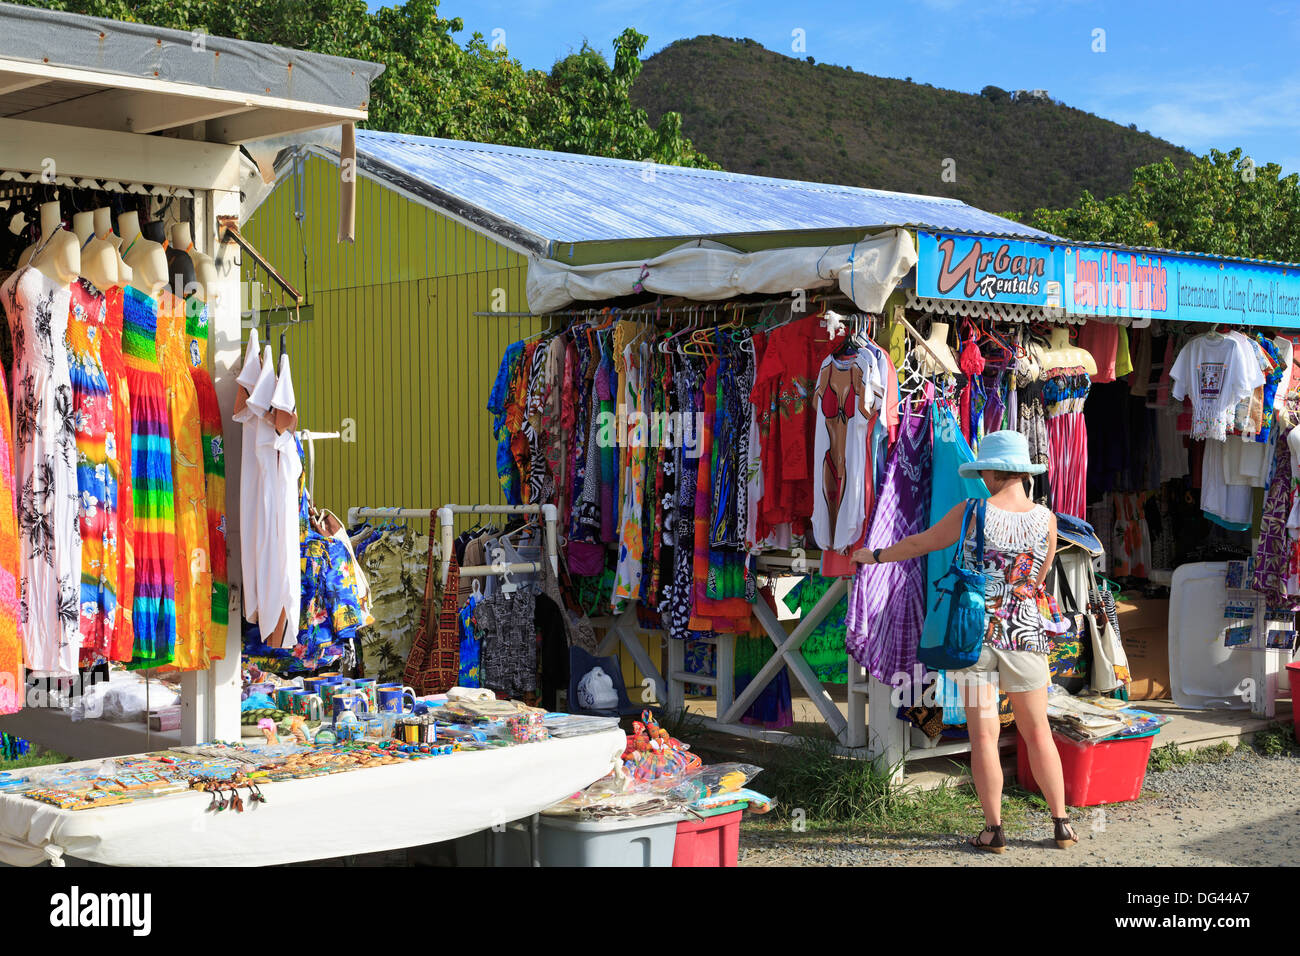 Magasin d'artisanat à Road Town, Tortola, Îles Vierges britanniques, Antilles, Caraïbes, Amérique Centrale Banque D'Images